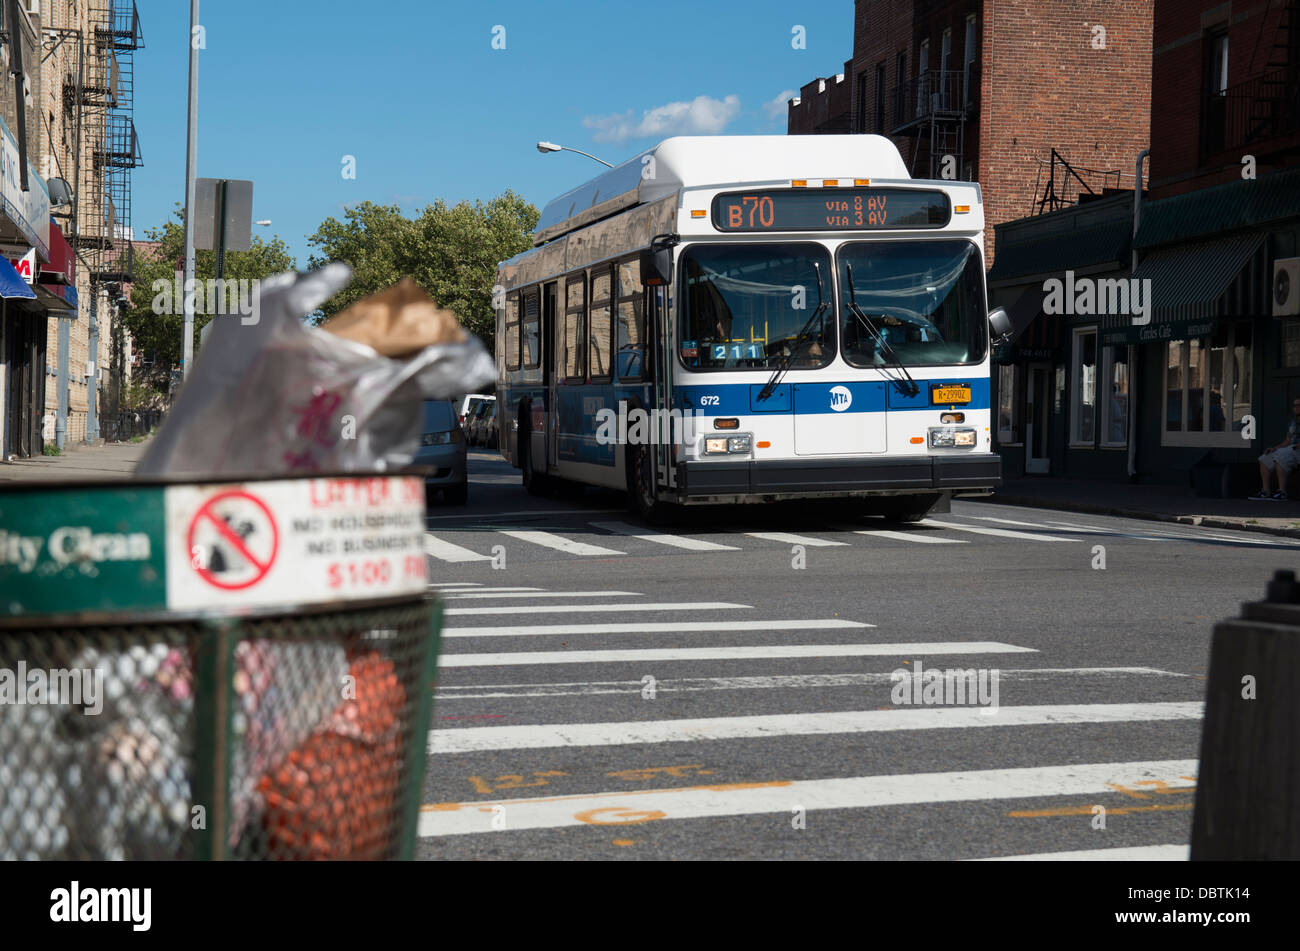 A New York City MTA bus in Brooklyn, NY. Stock Photo